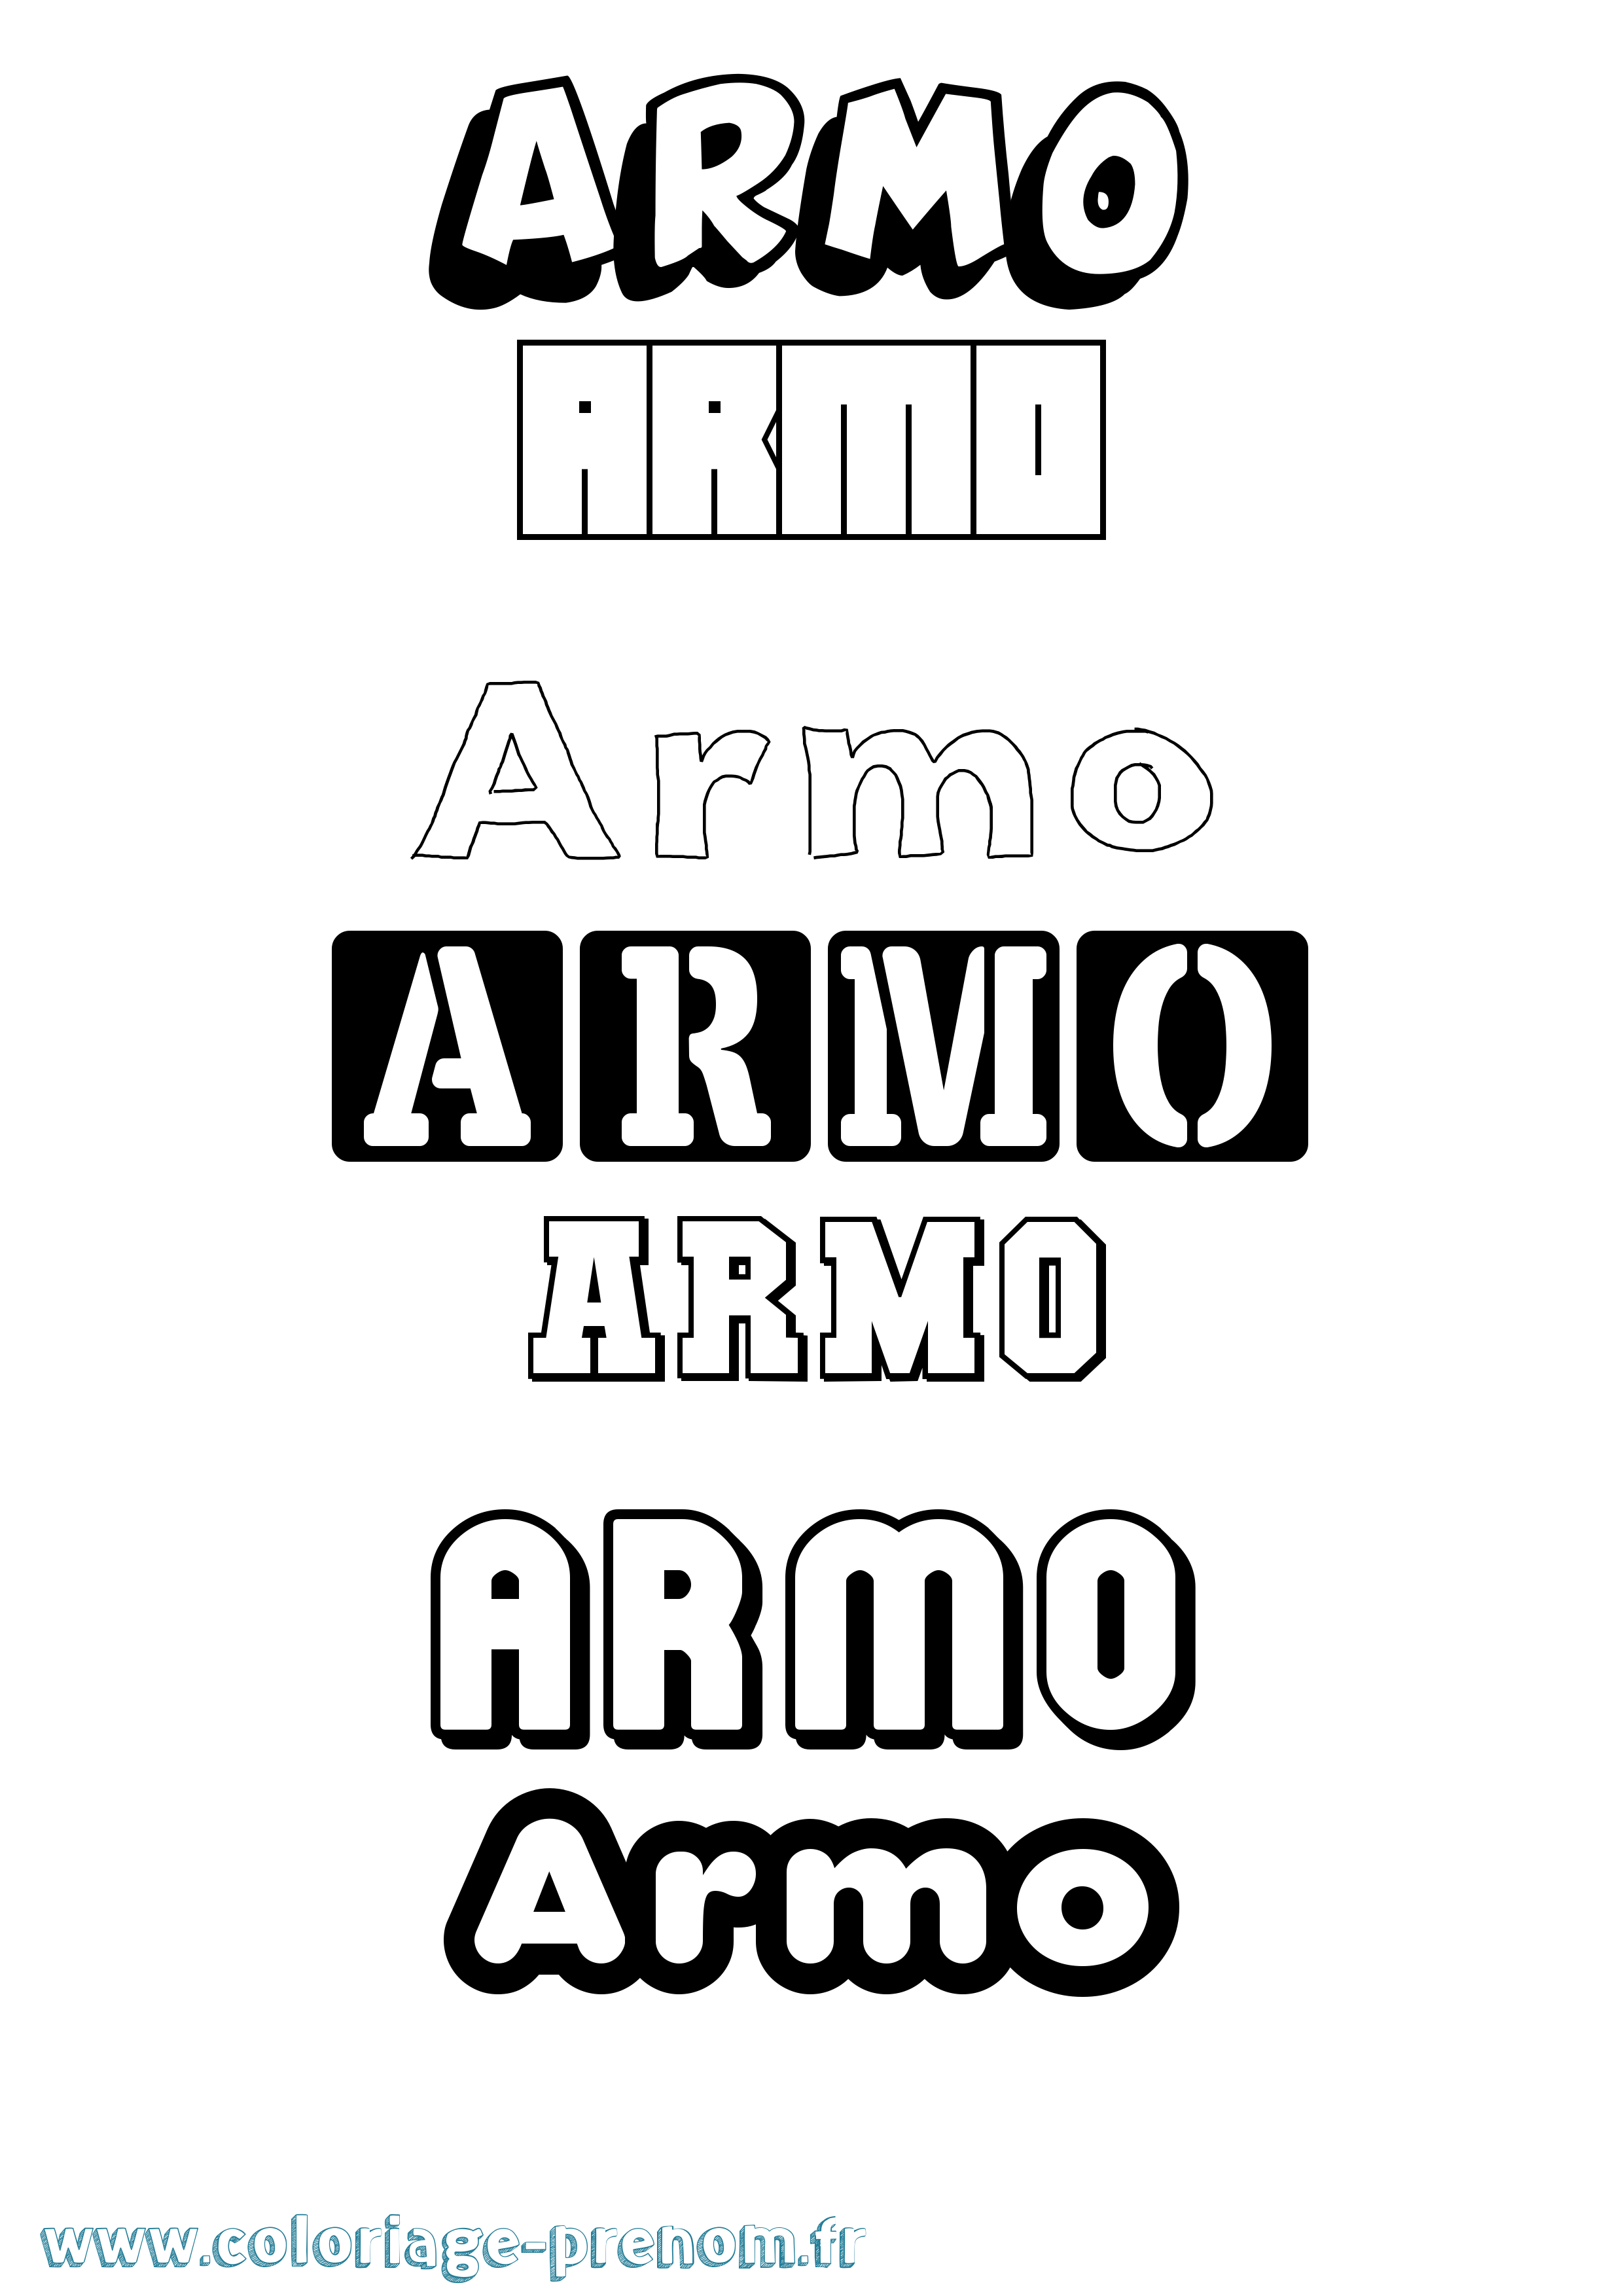 Coloriage prénom Armo Simple